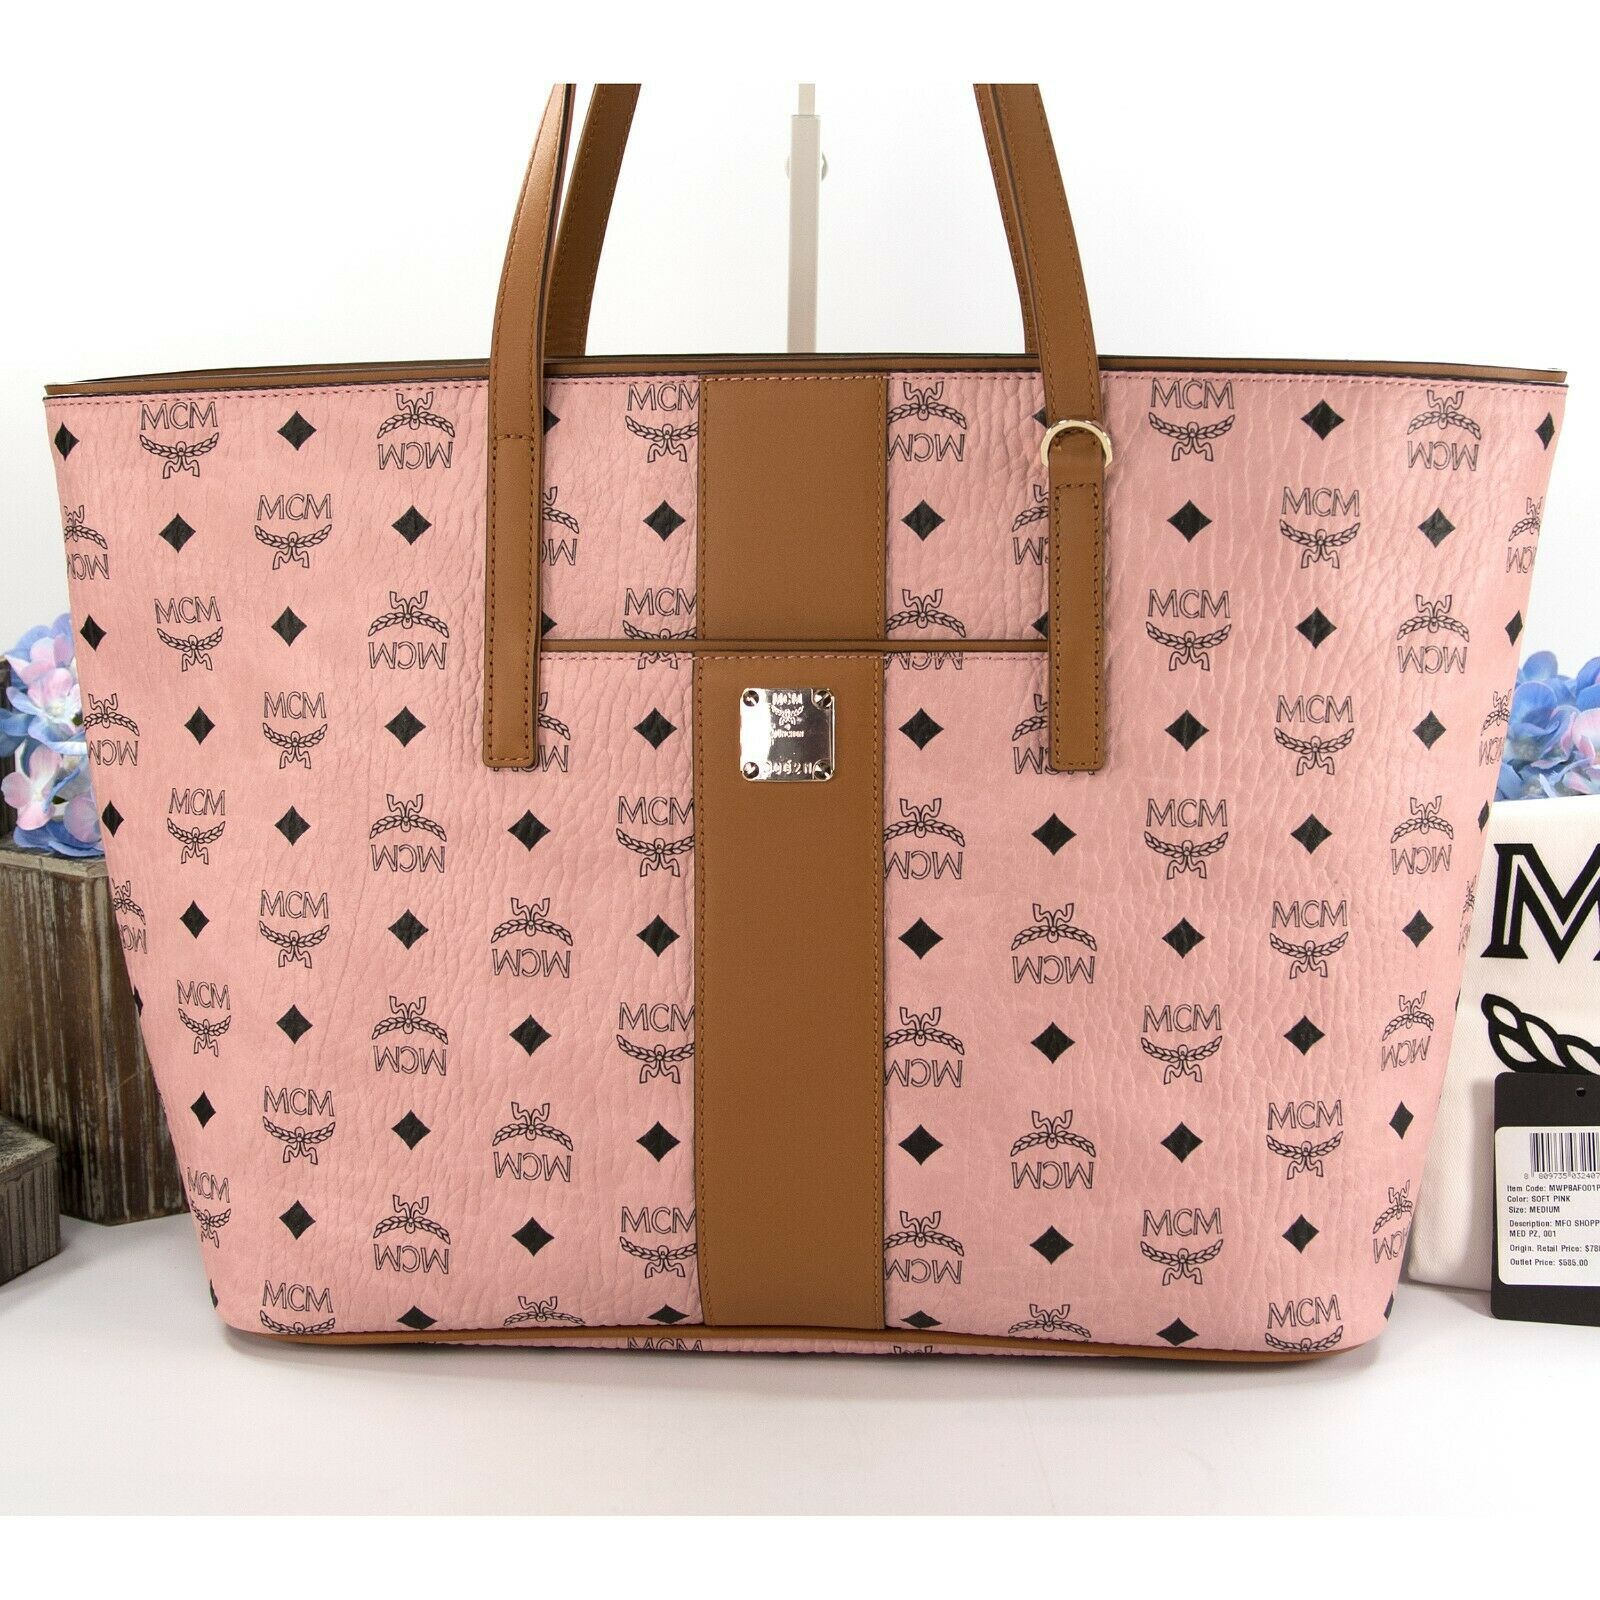 Handbag Designer By Mcm Size: Large